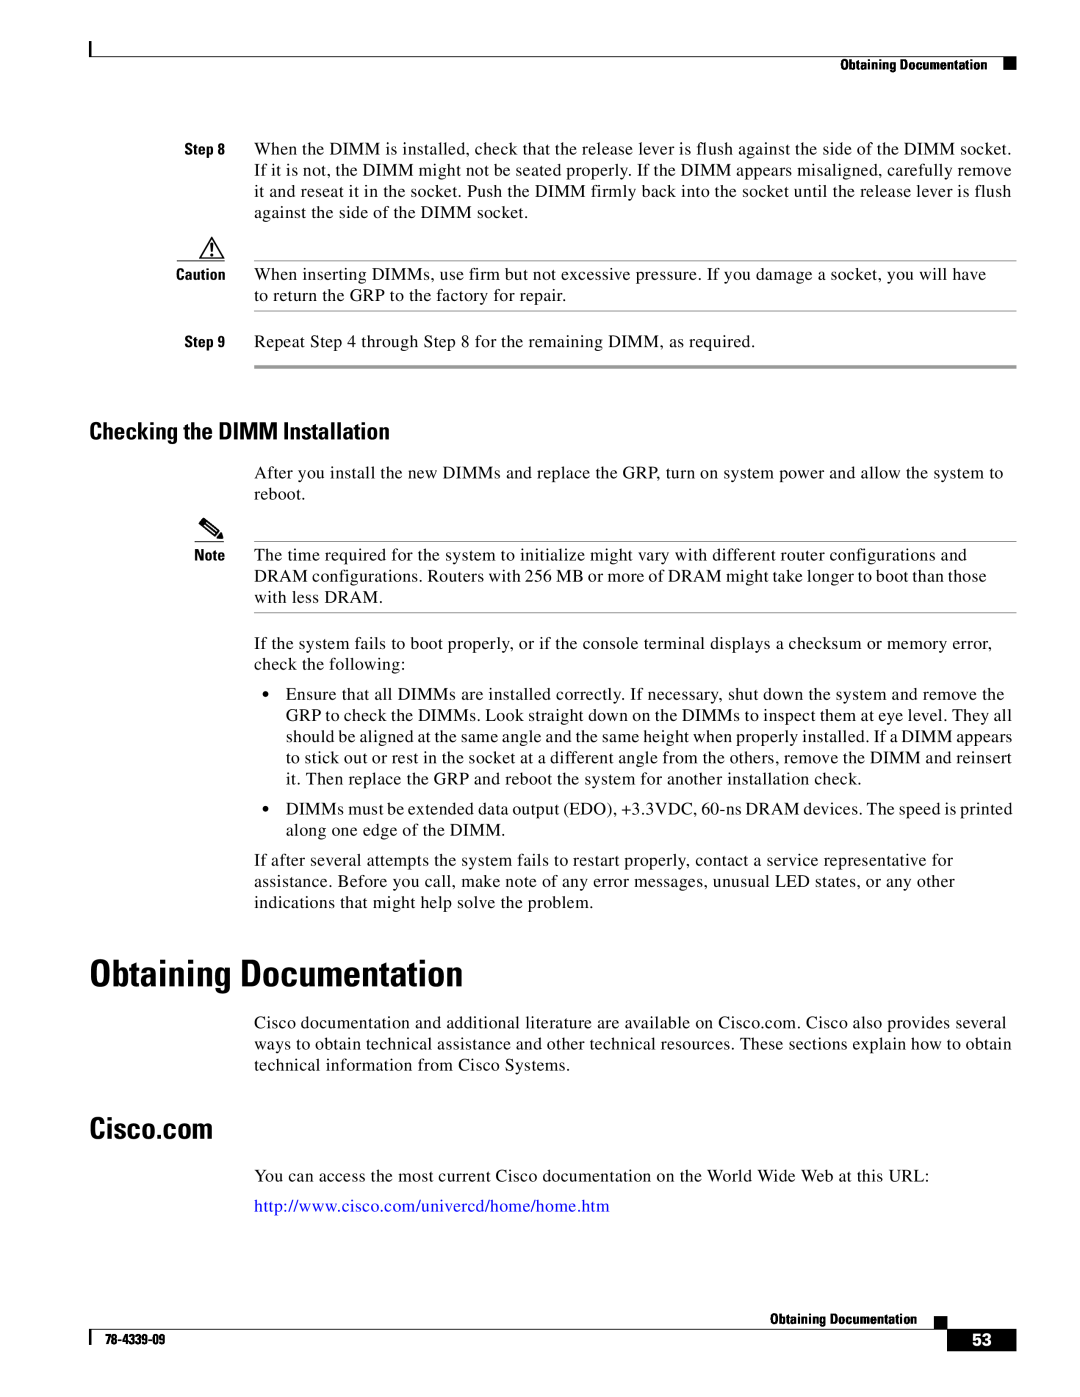 Cisco Systems GRP-B manual Obtaining Documentation, Cisco.com, Checking the DIMM Installation 